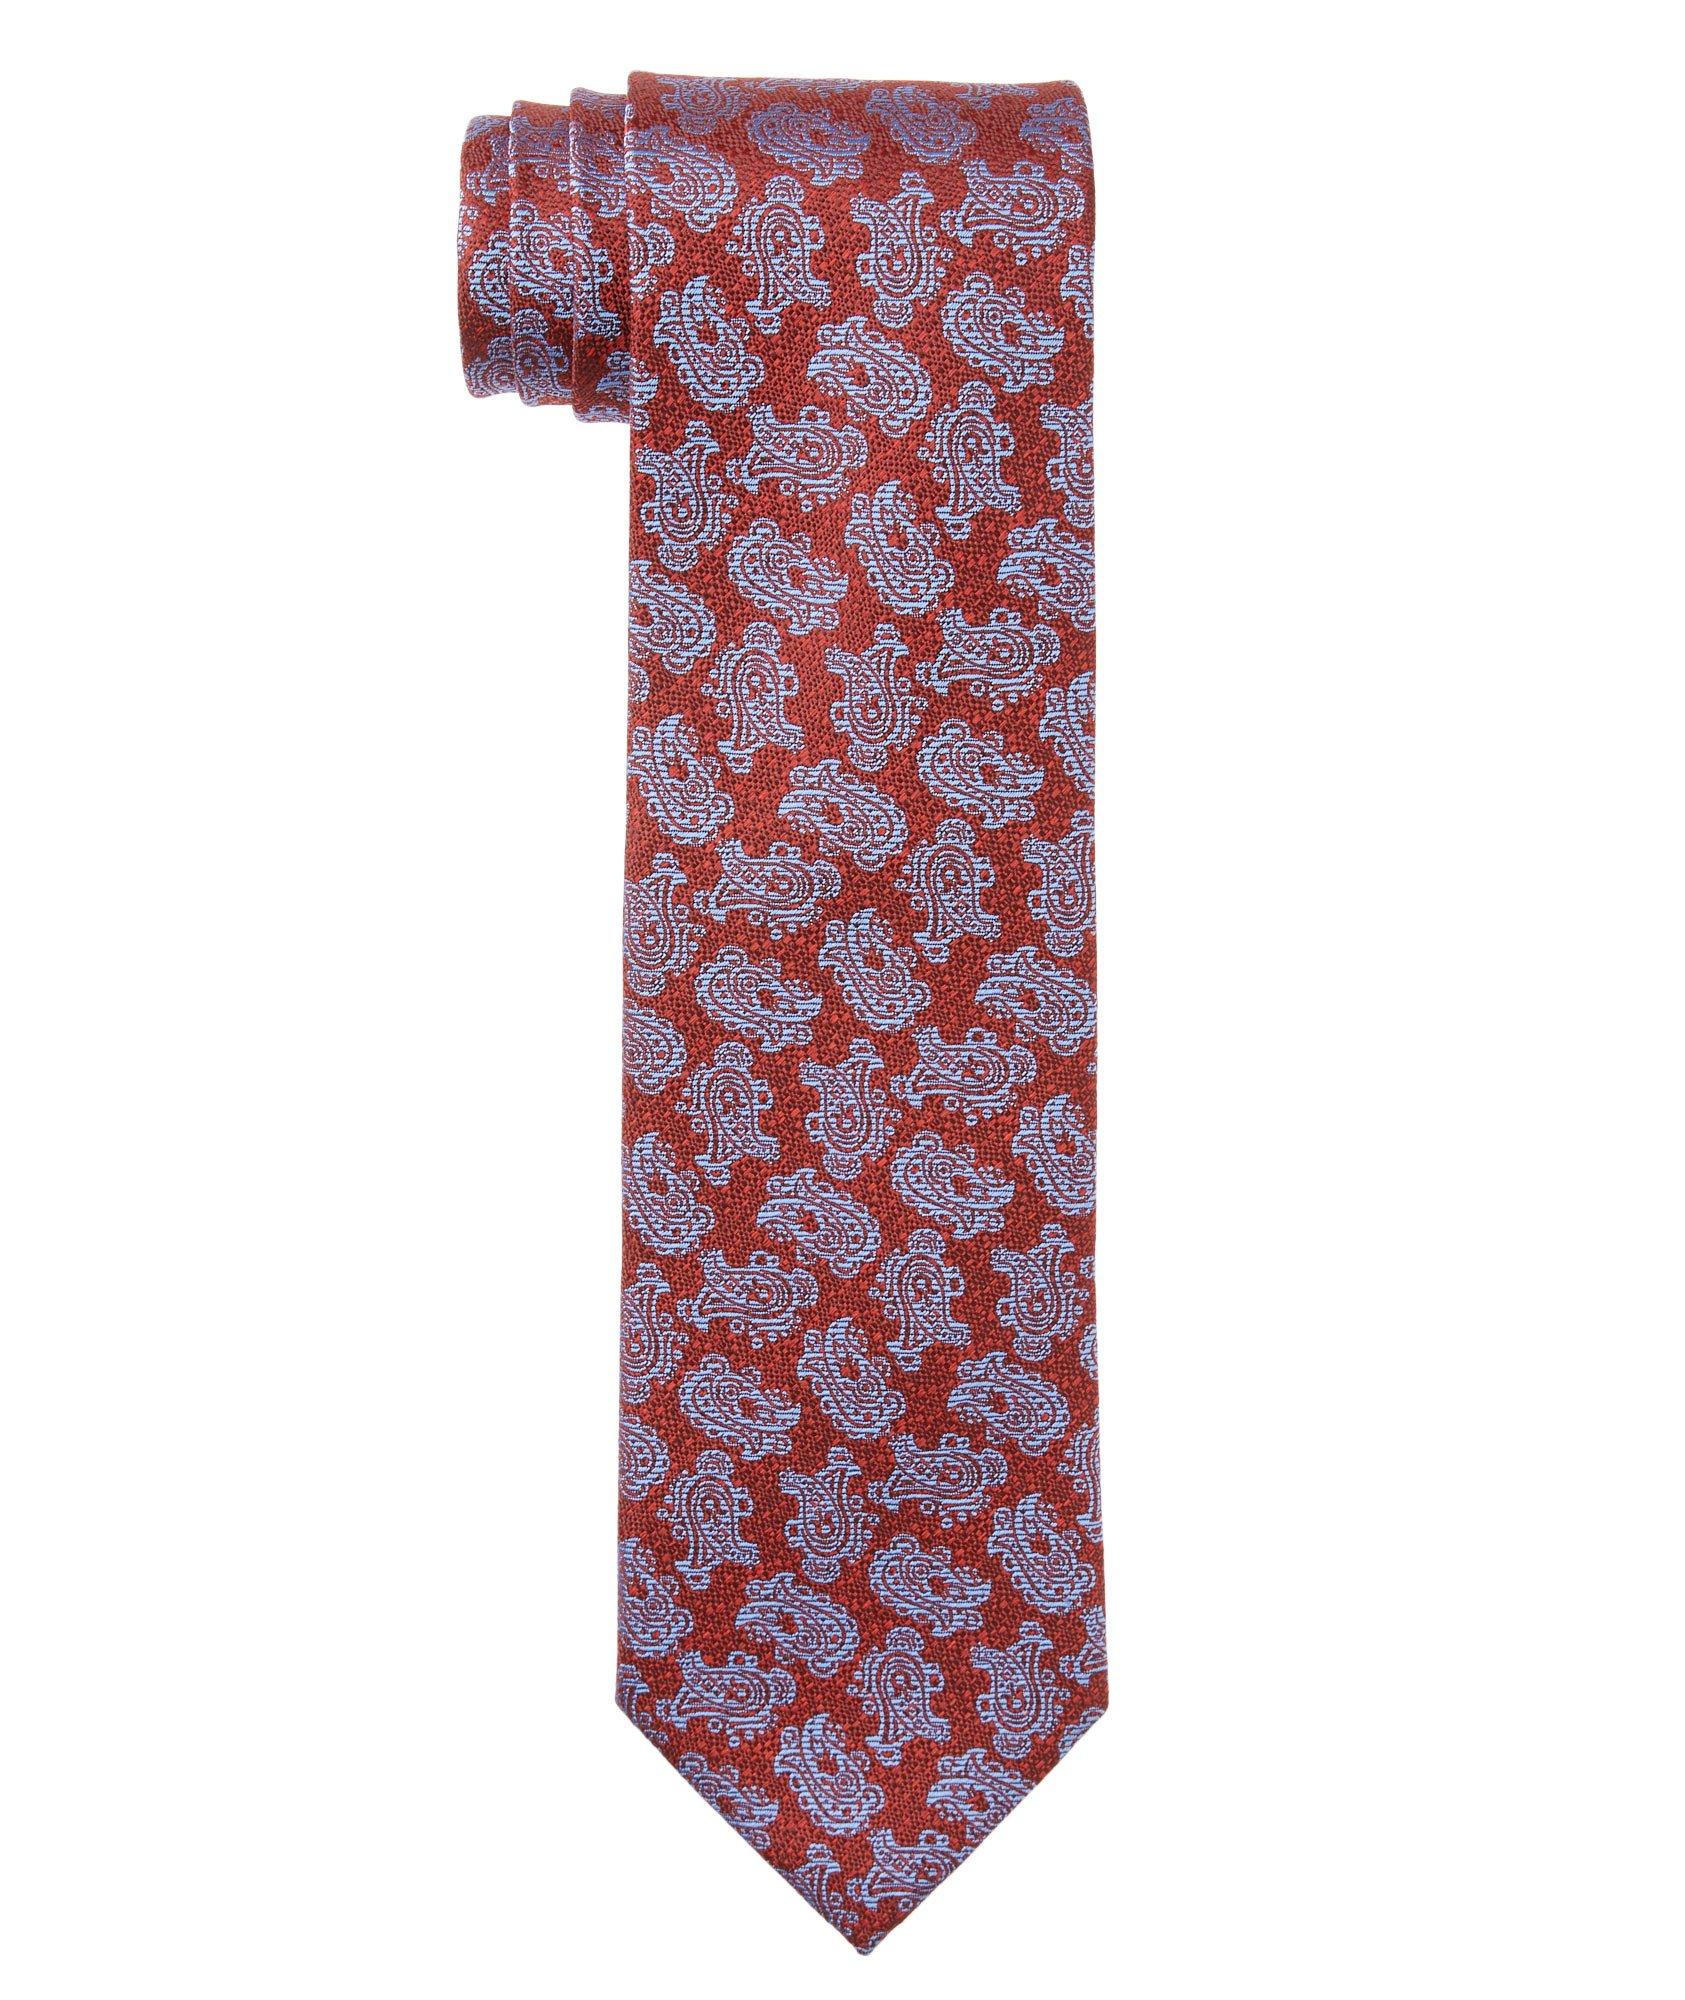 Cravate imprimée en soie image 0